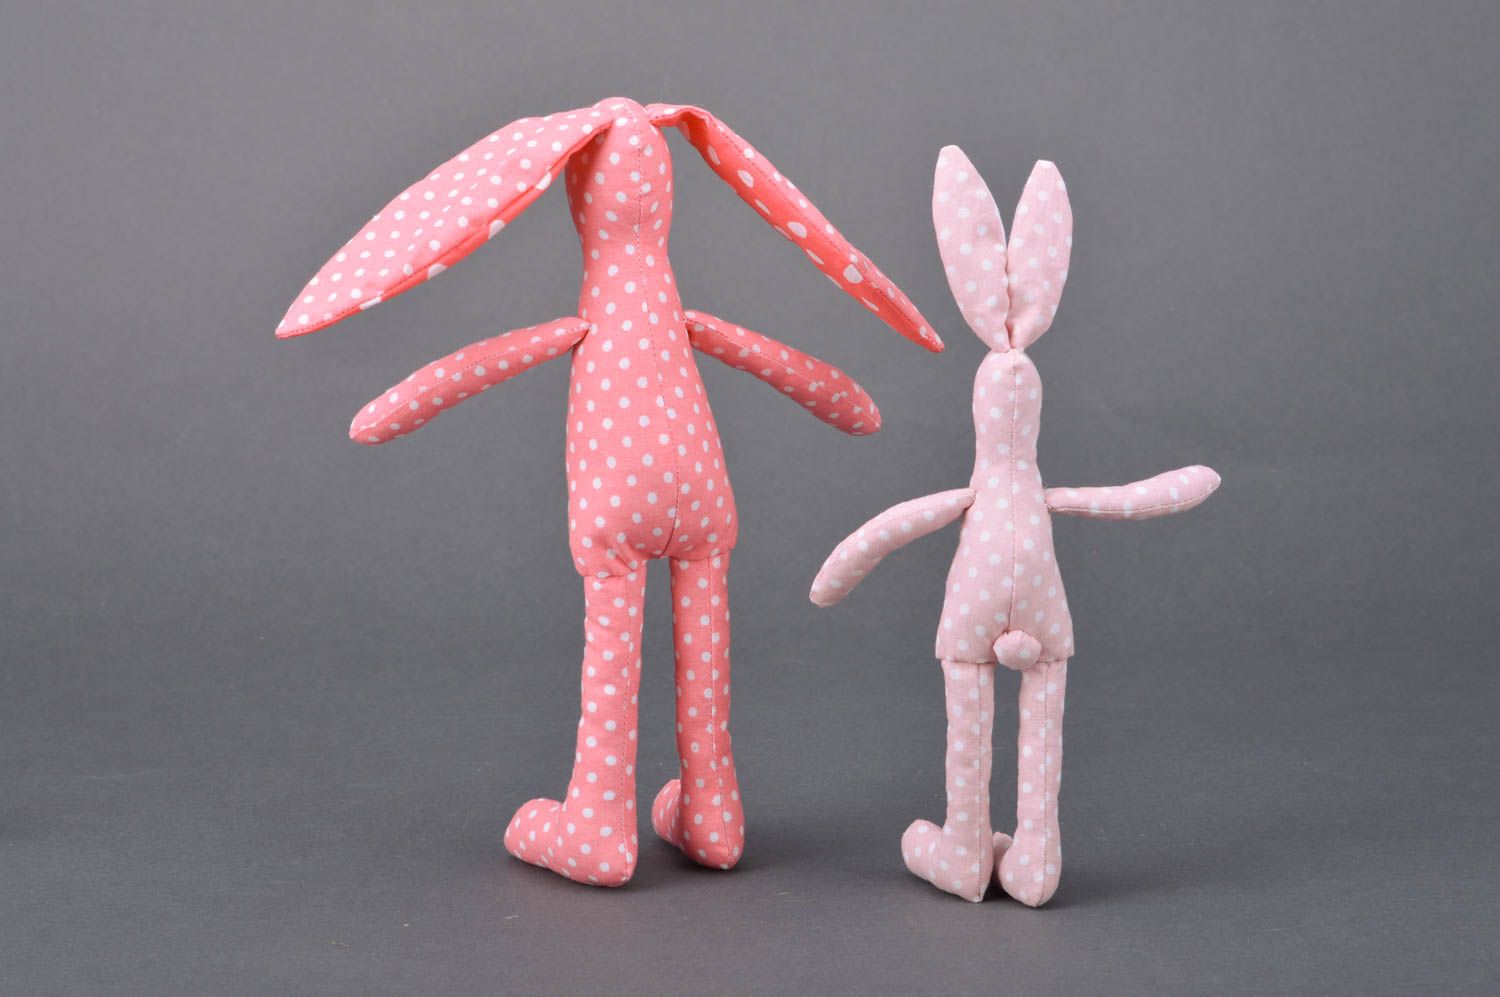 Набор тканевых игрушек зайцы 2 штуки из хлопка ручной работы розовые в горошек фото 5